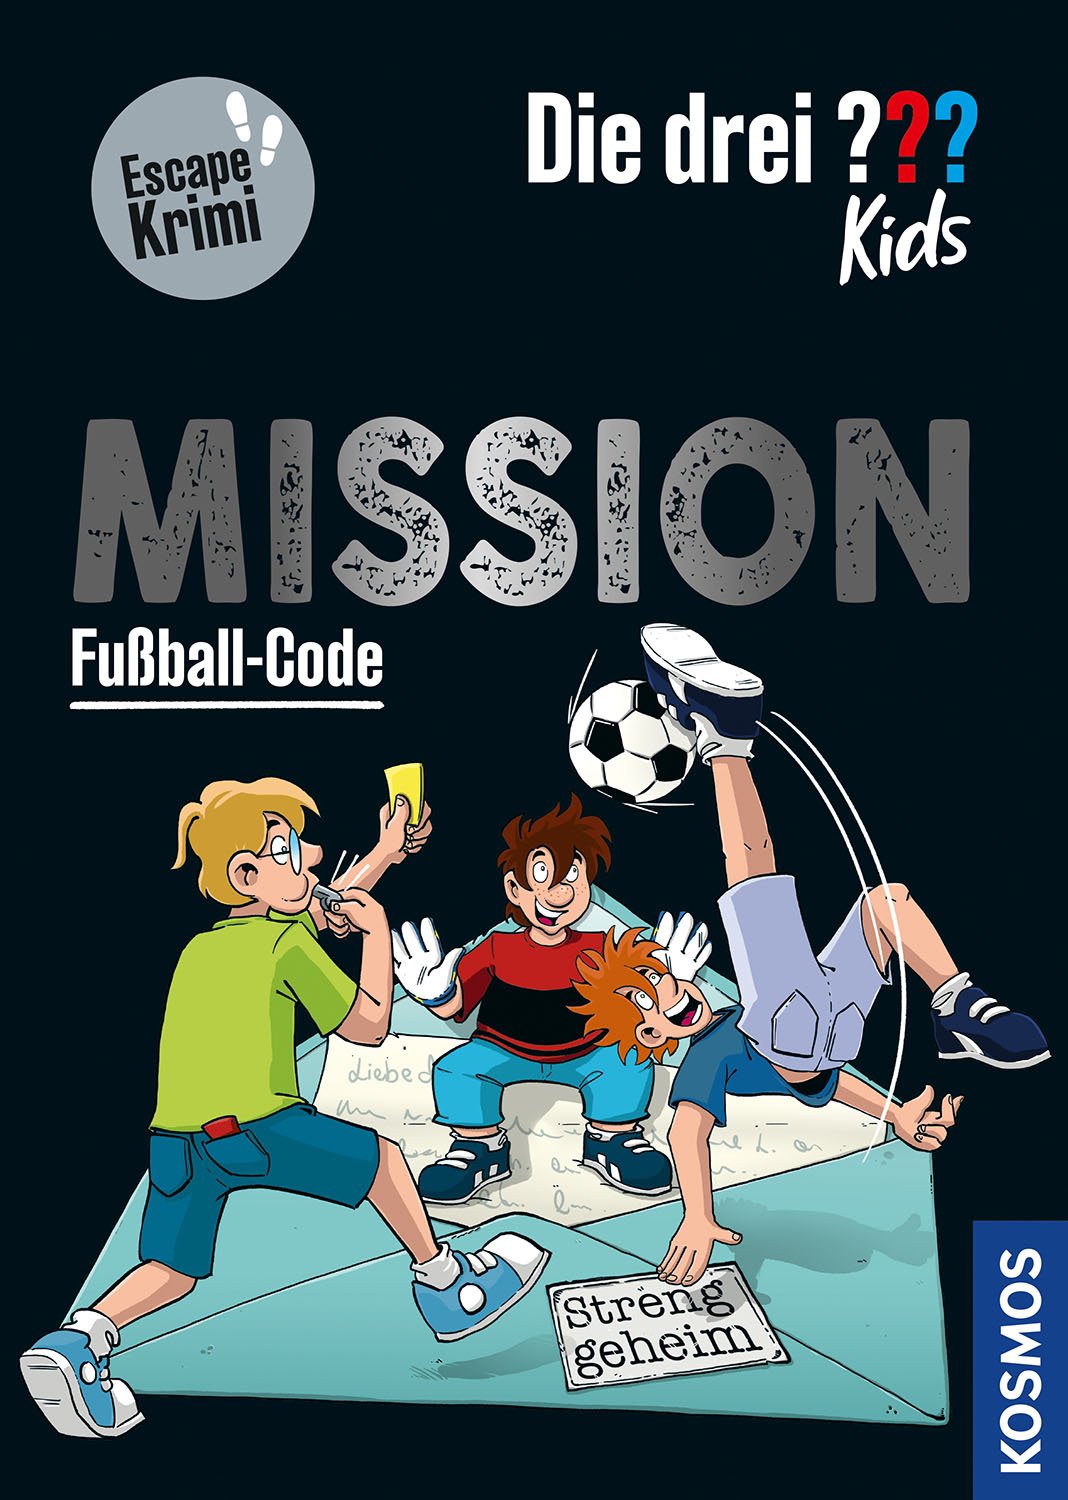 Die drei ??? Kids - Mission Fußball-Code (Escape Krimi)